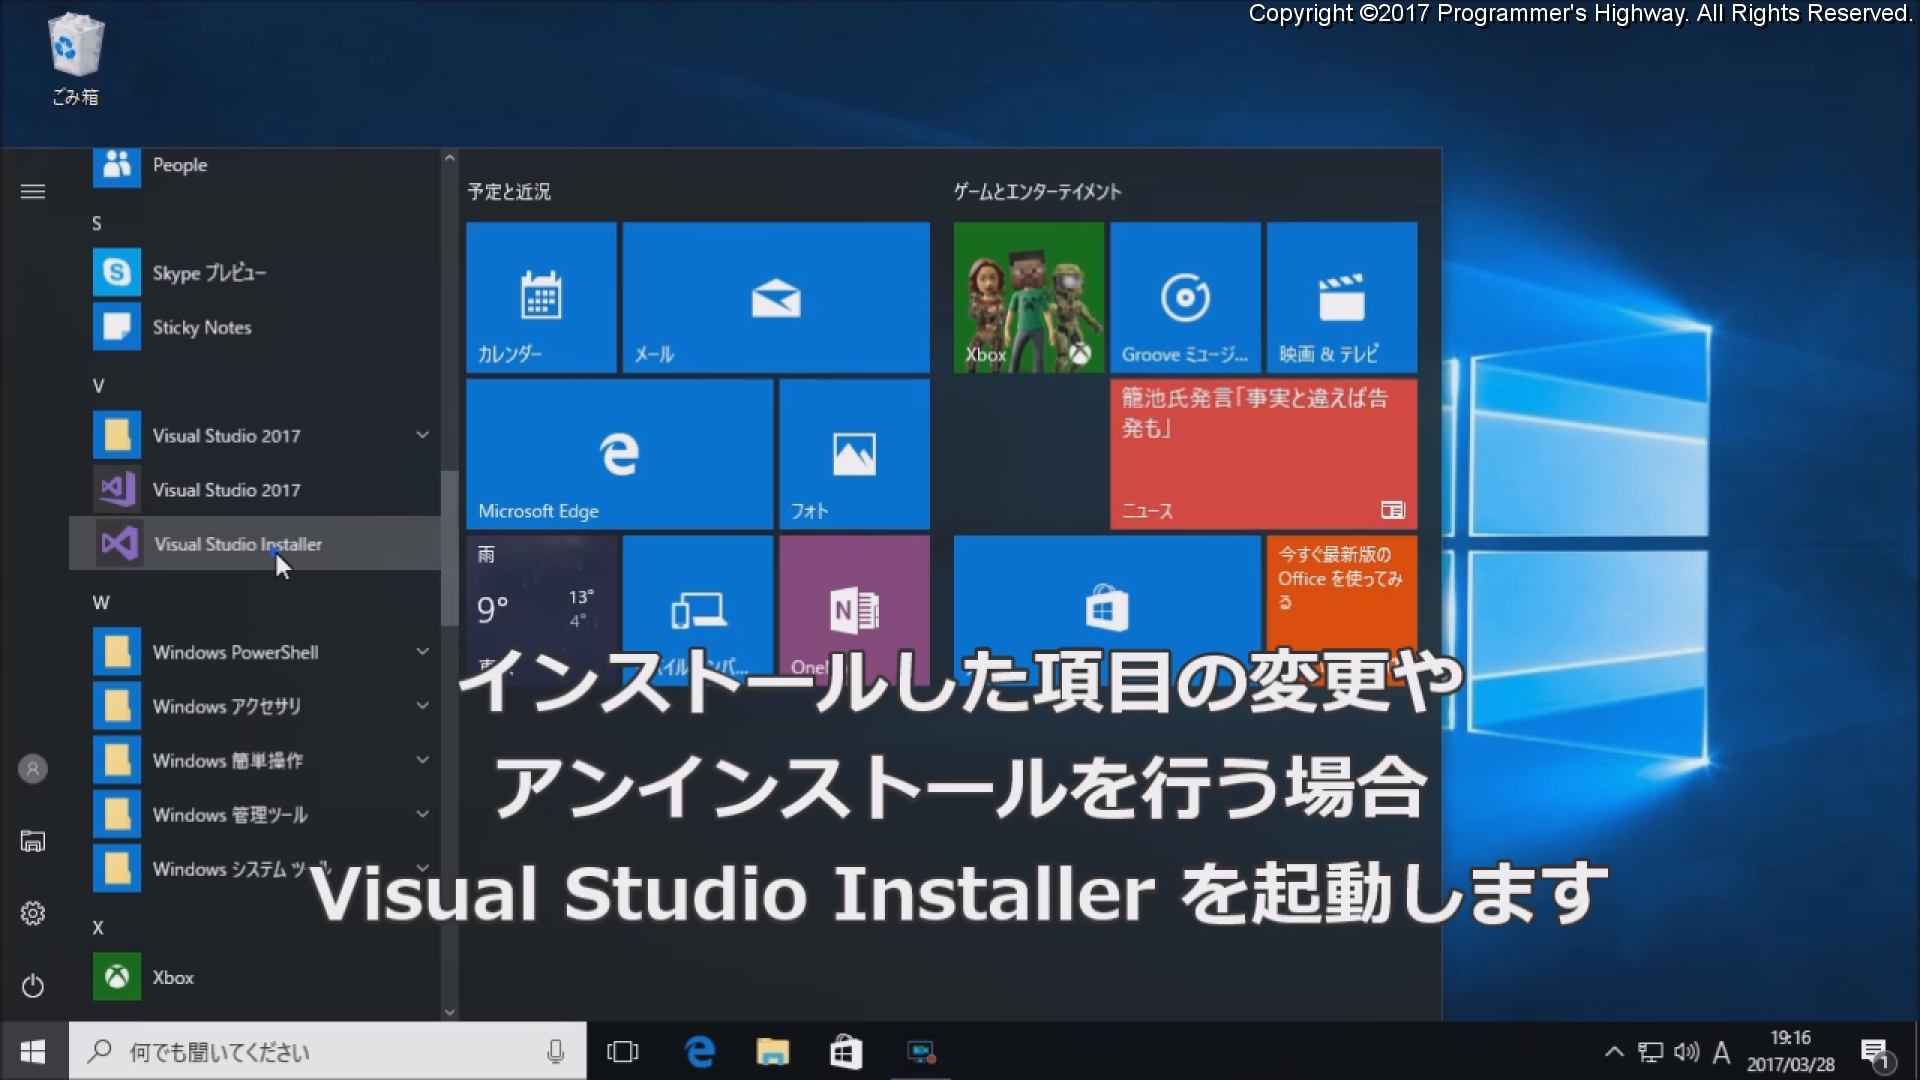 インストールした項目の変更やアンインストールを行う場合 Visual Studio Installer を起動します